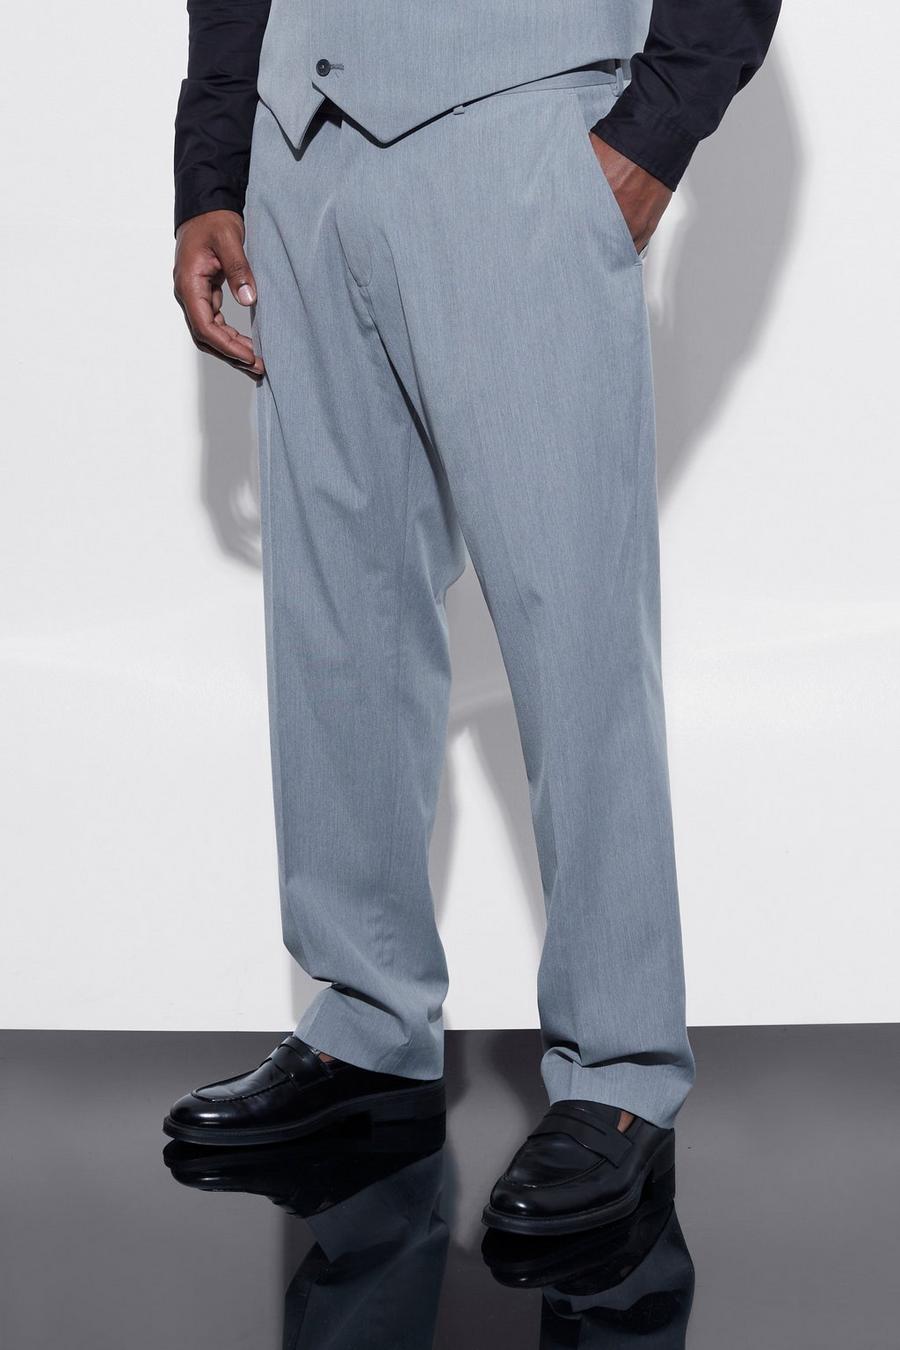 Pantaloni smoking Plus Size Slim Fit, Grey grigio